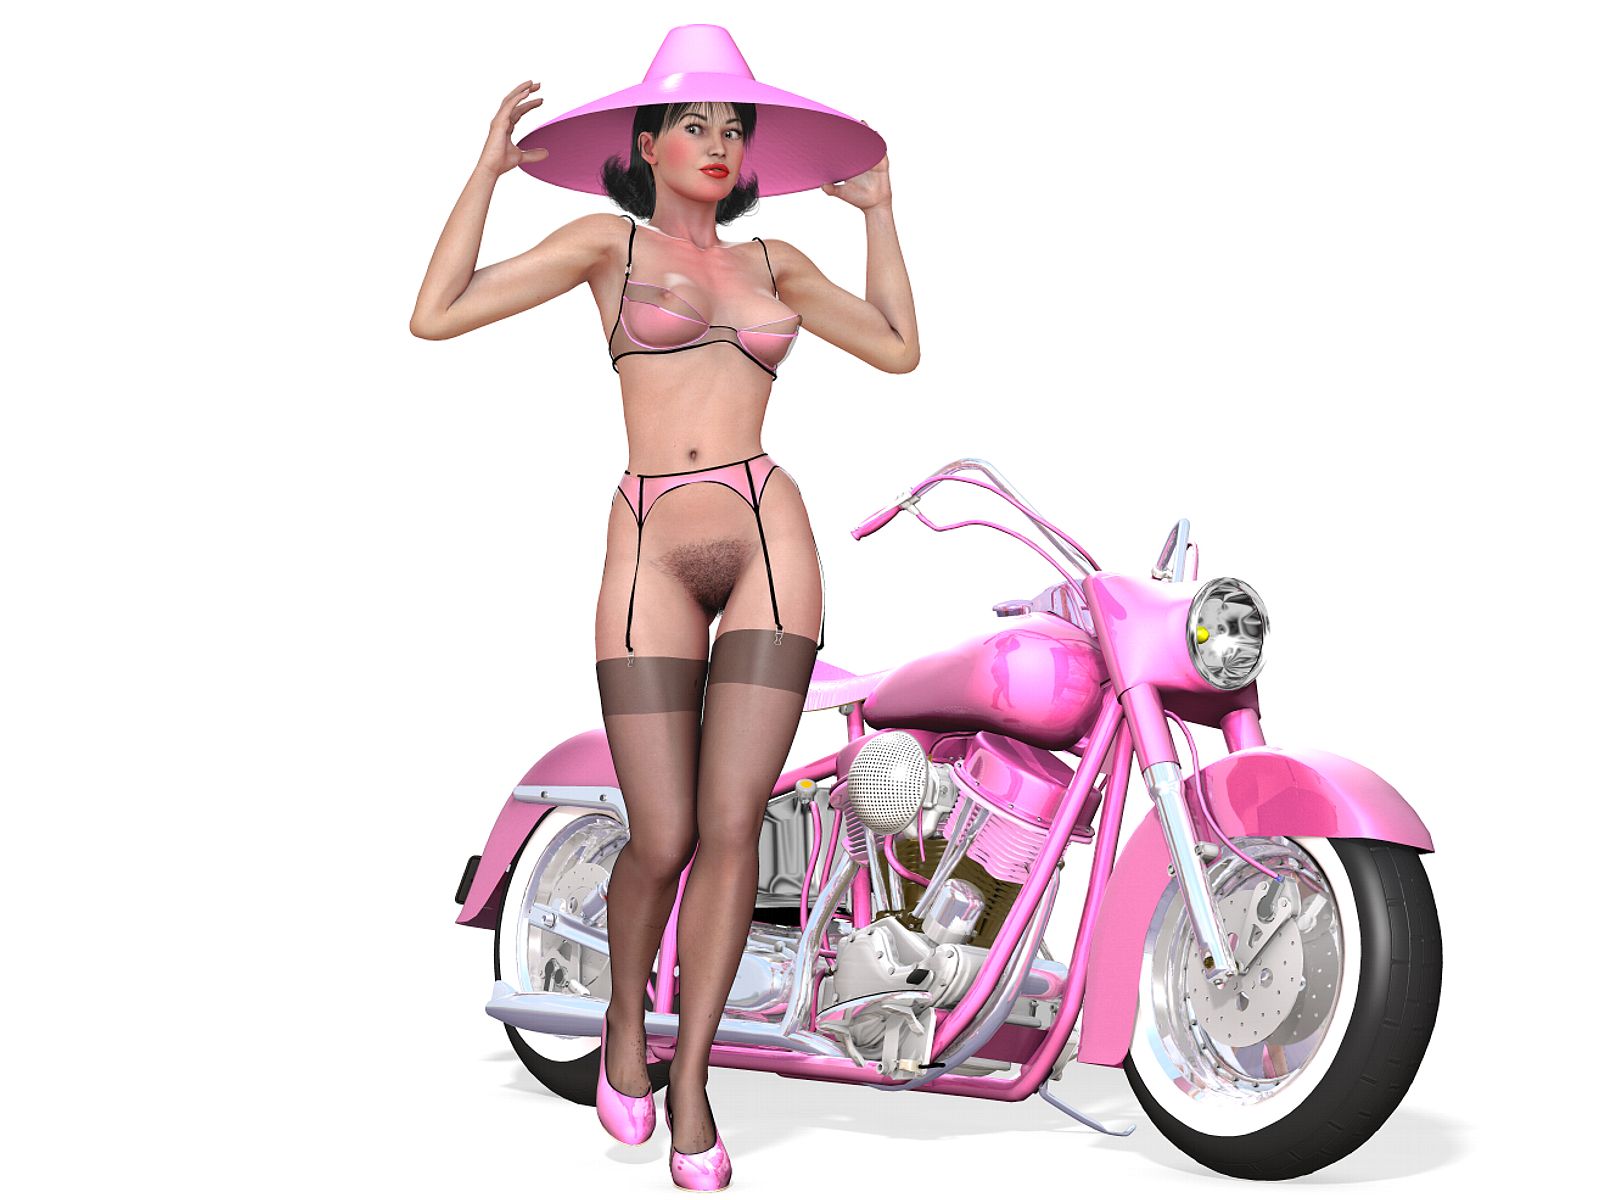 нарисованная девушка, розовый мотоцикл с девушкой без трусов